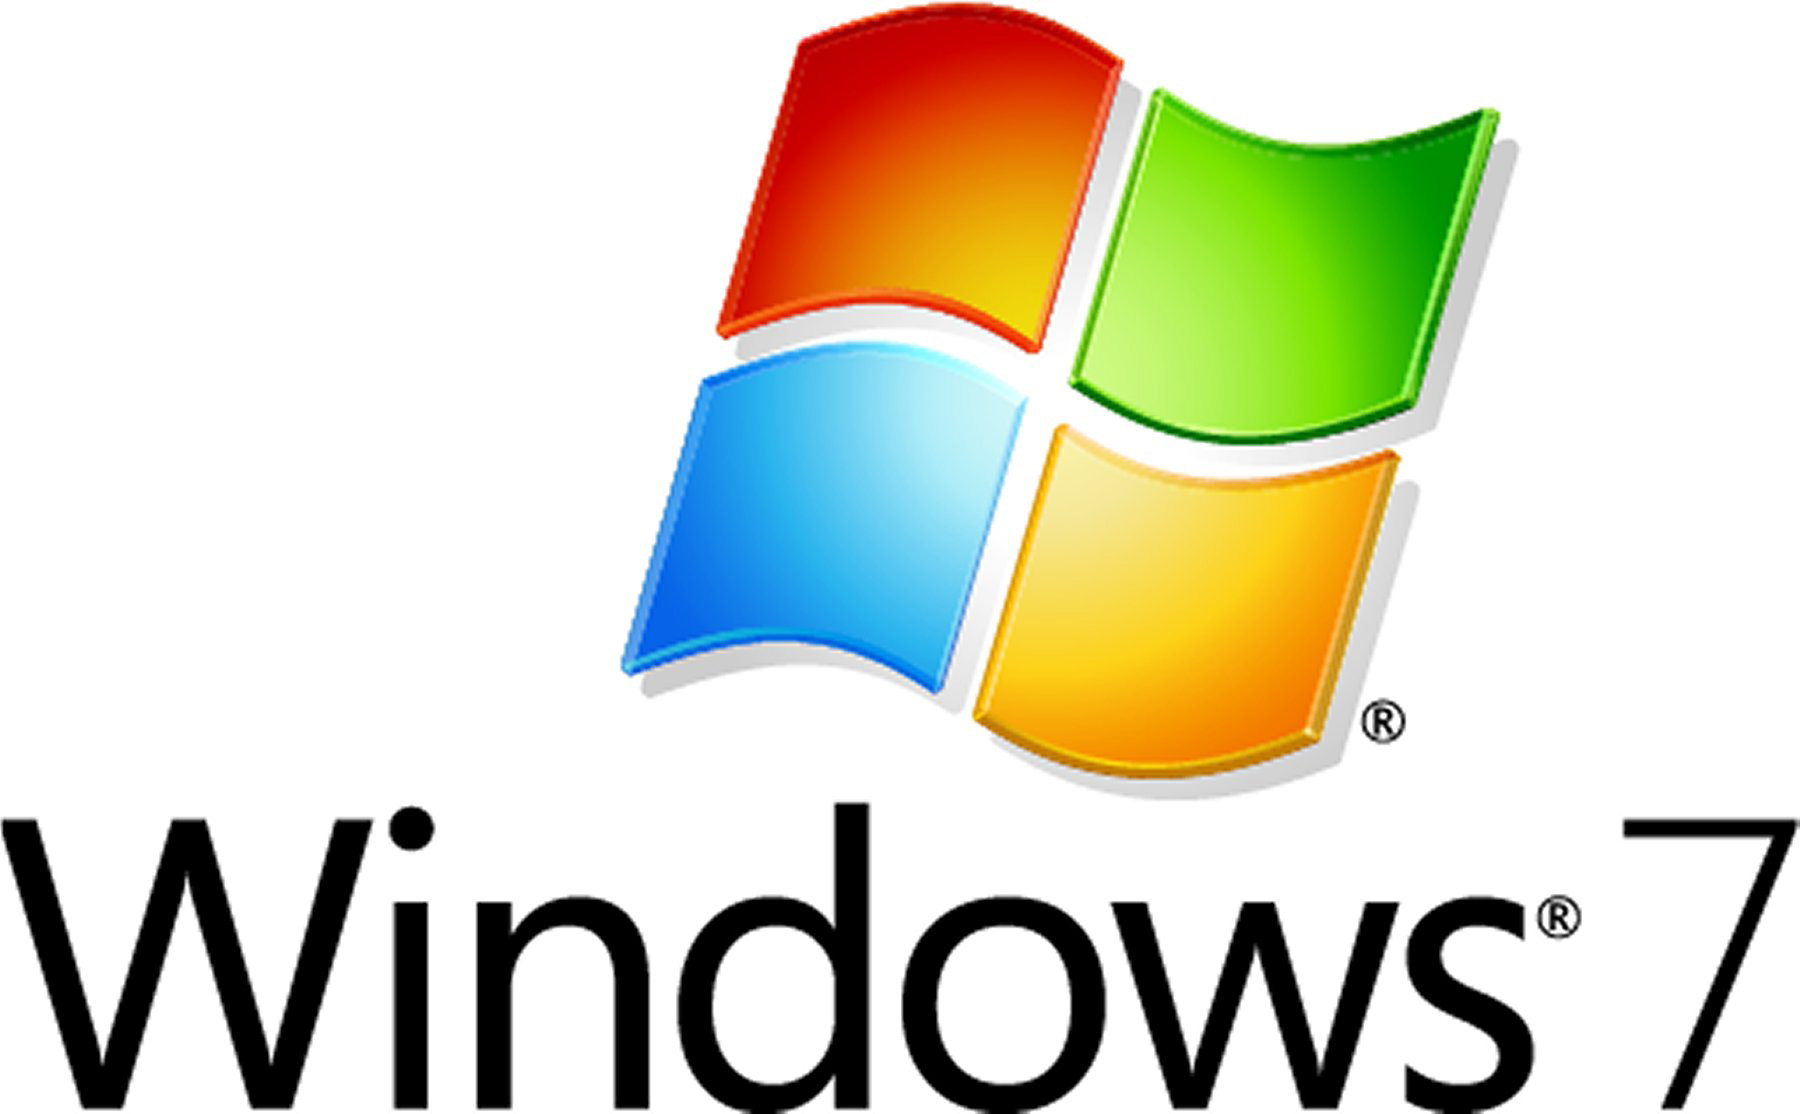  скачать бесплатно windows 7 2010